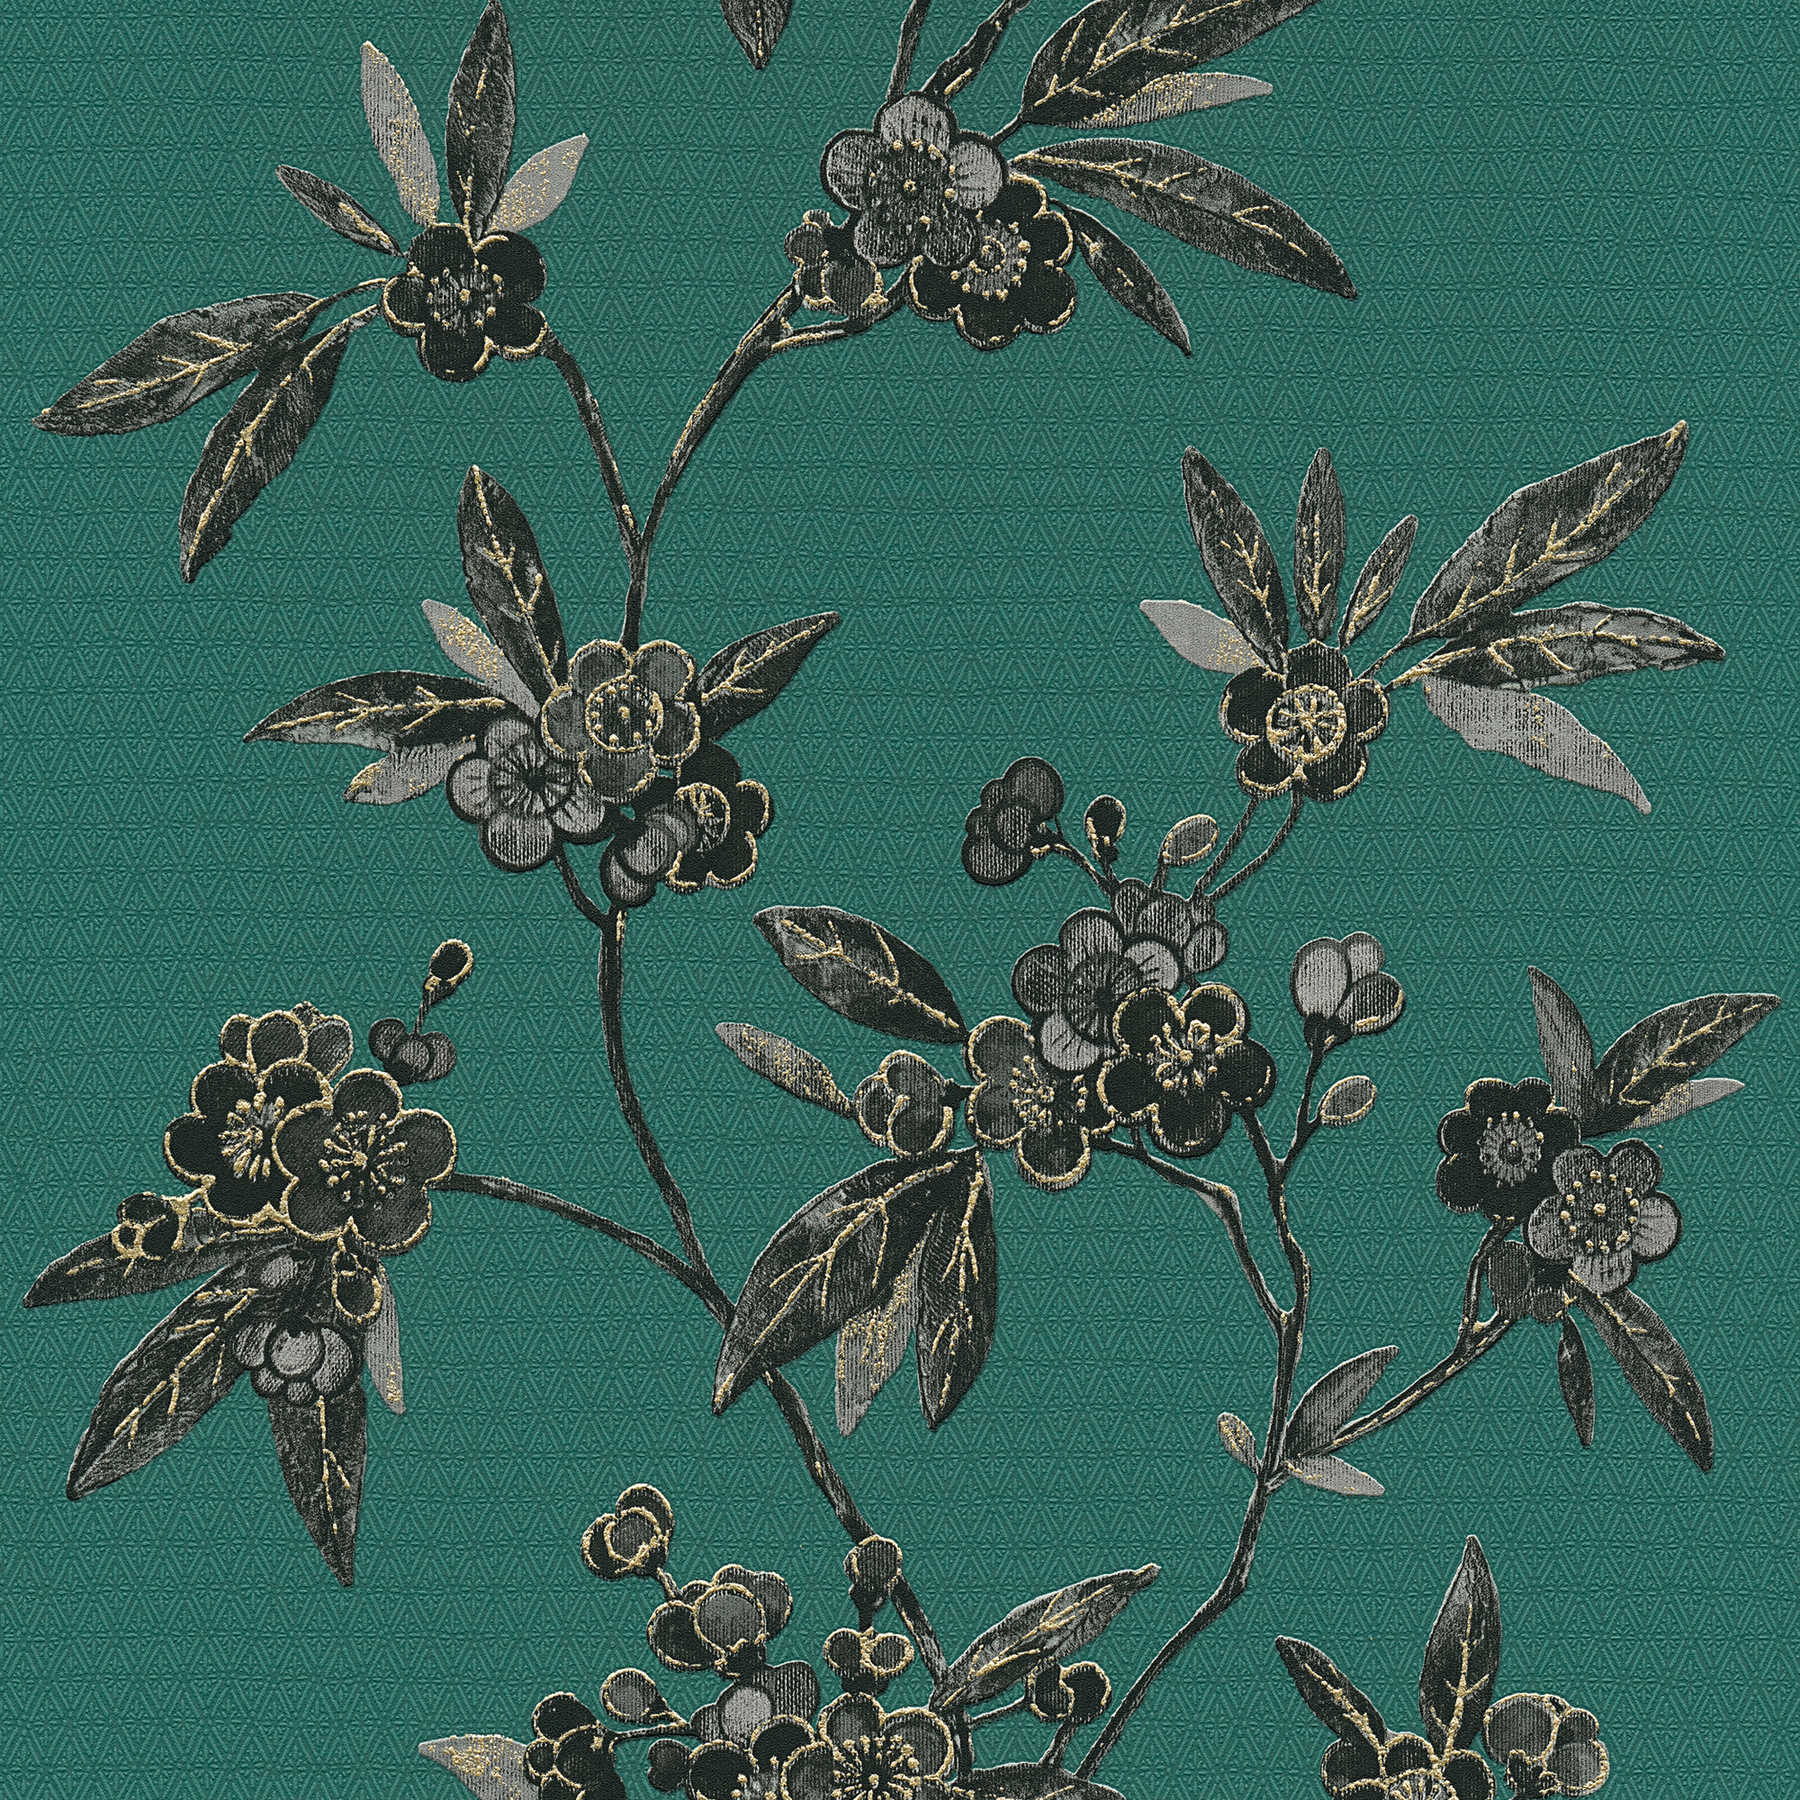         Bloemenbehang met bloemranken in Aziatische stijl - groen, zwart, grijs
    